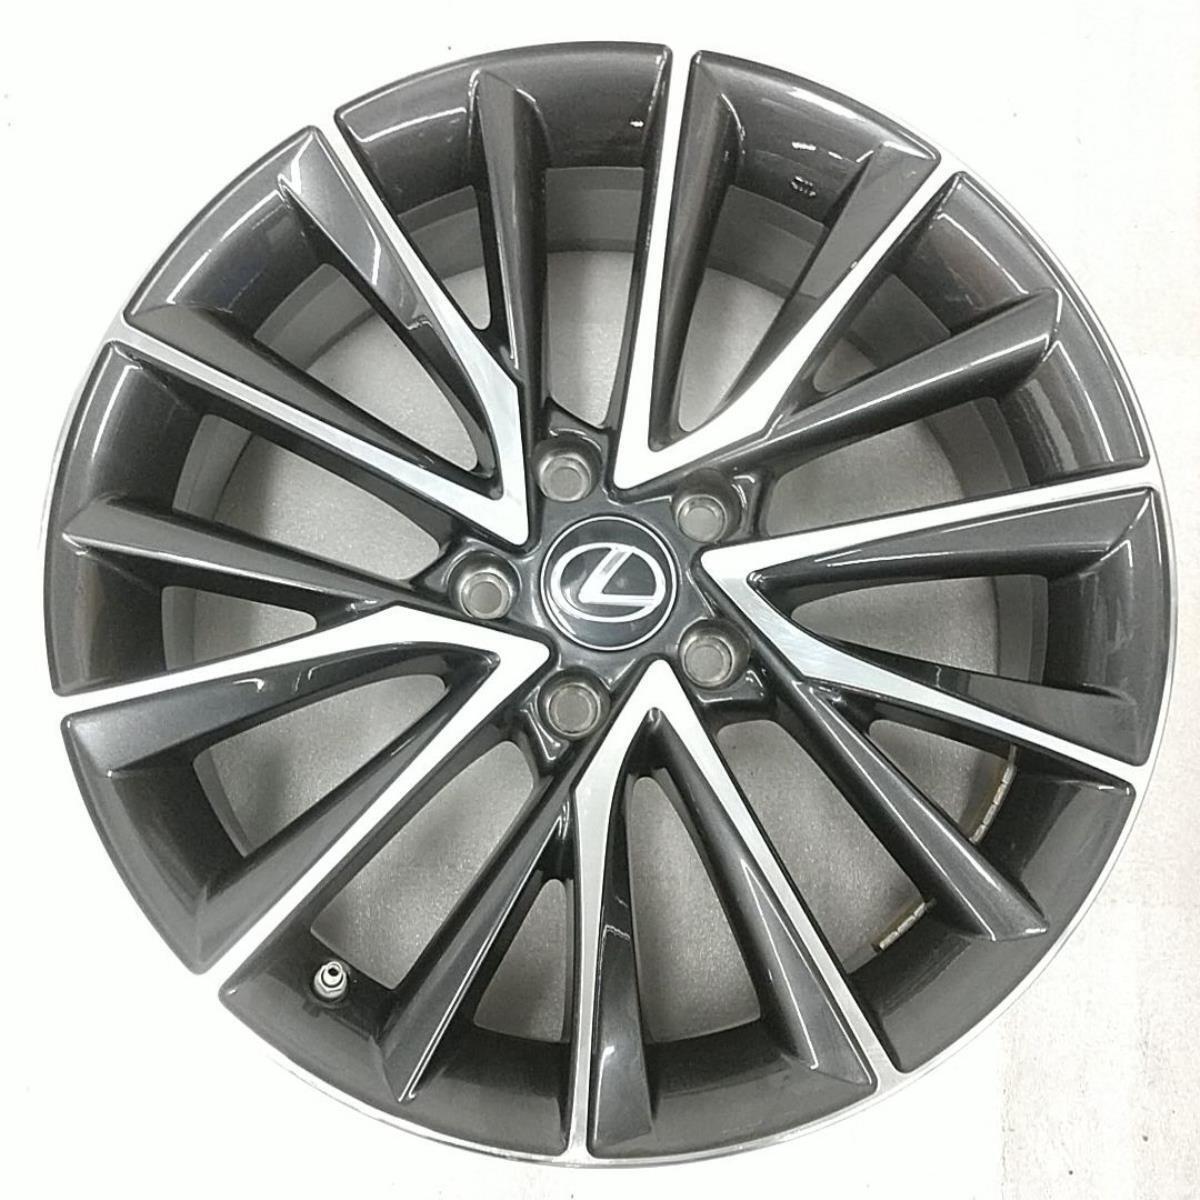 (1) Wheel Rim For NX250 Like New OEM Machined Charcoal